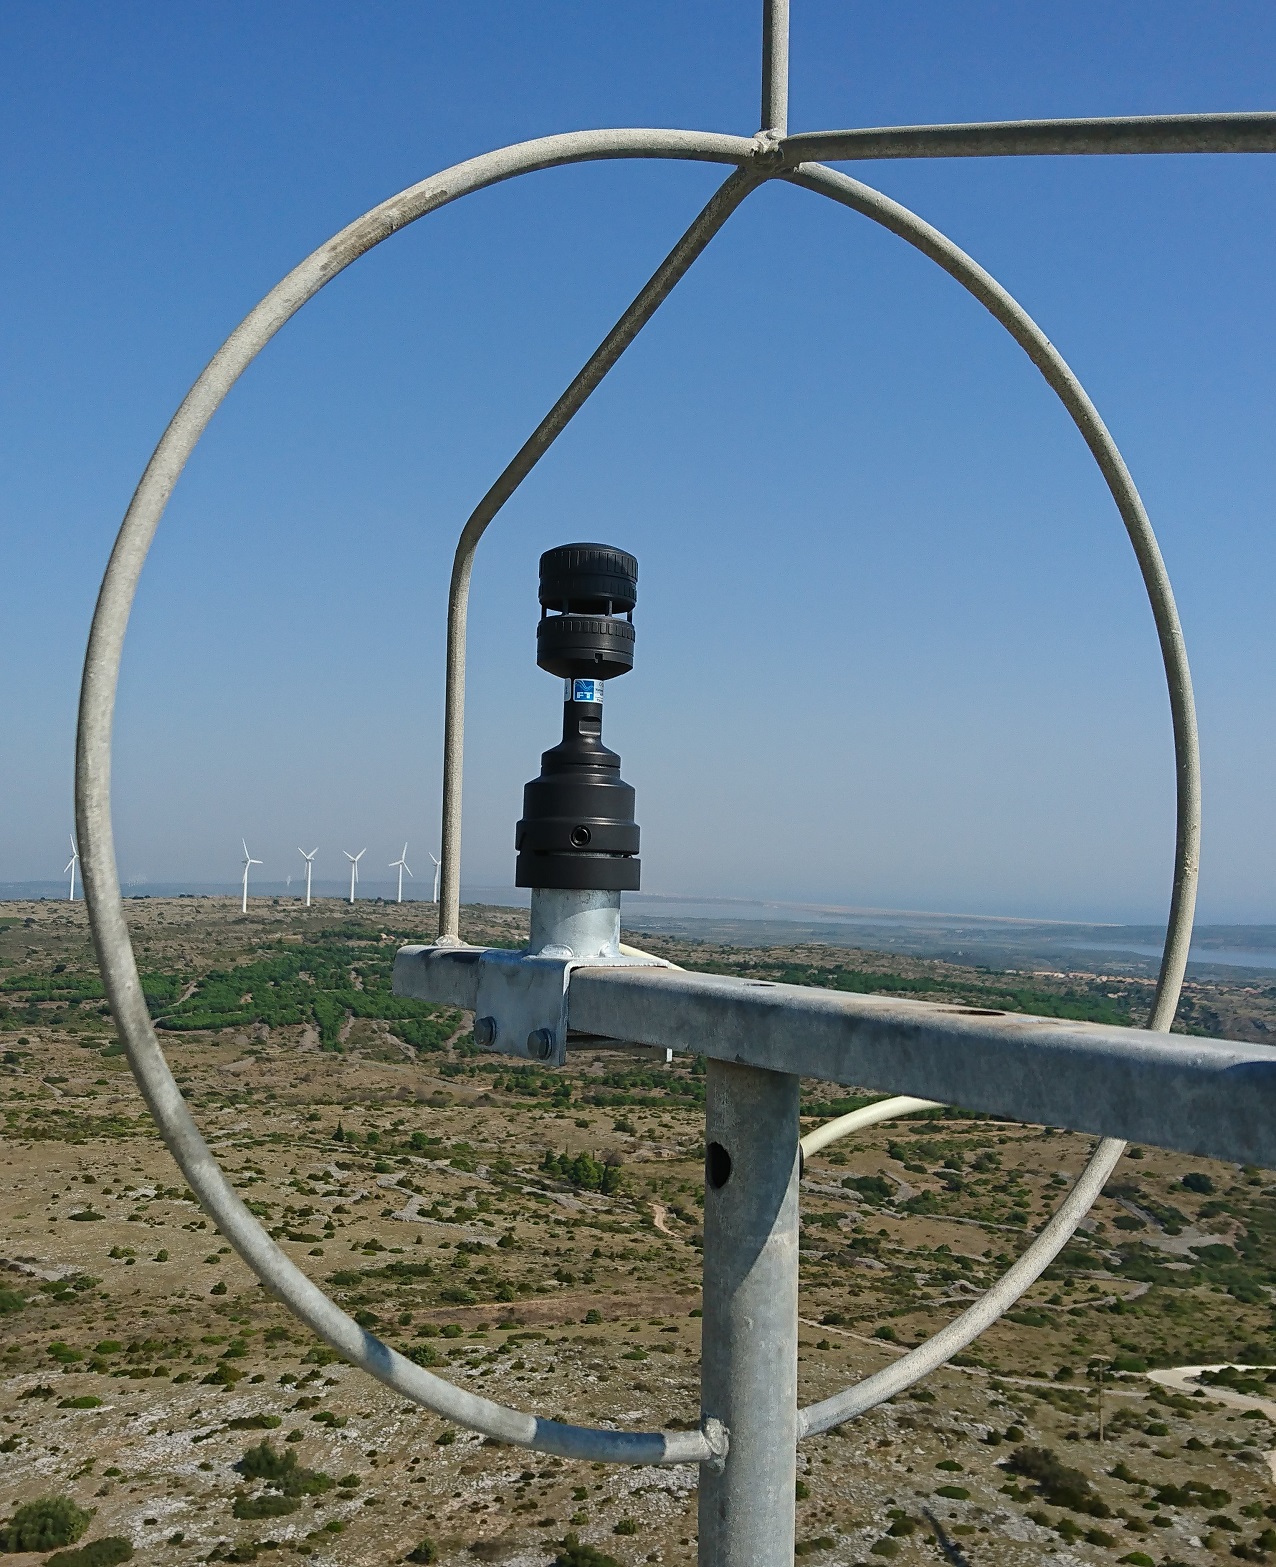 Sensor de viento ultrasónico FT742-DM50 montado dentro de un círculo de relámpagos en una turbina eólica en Francia